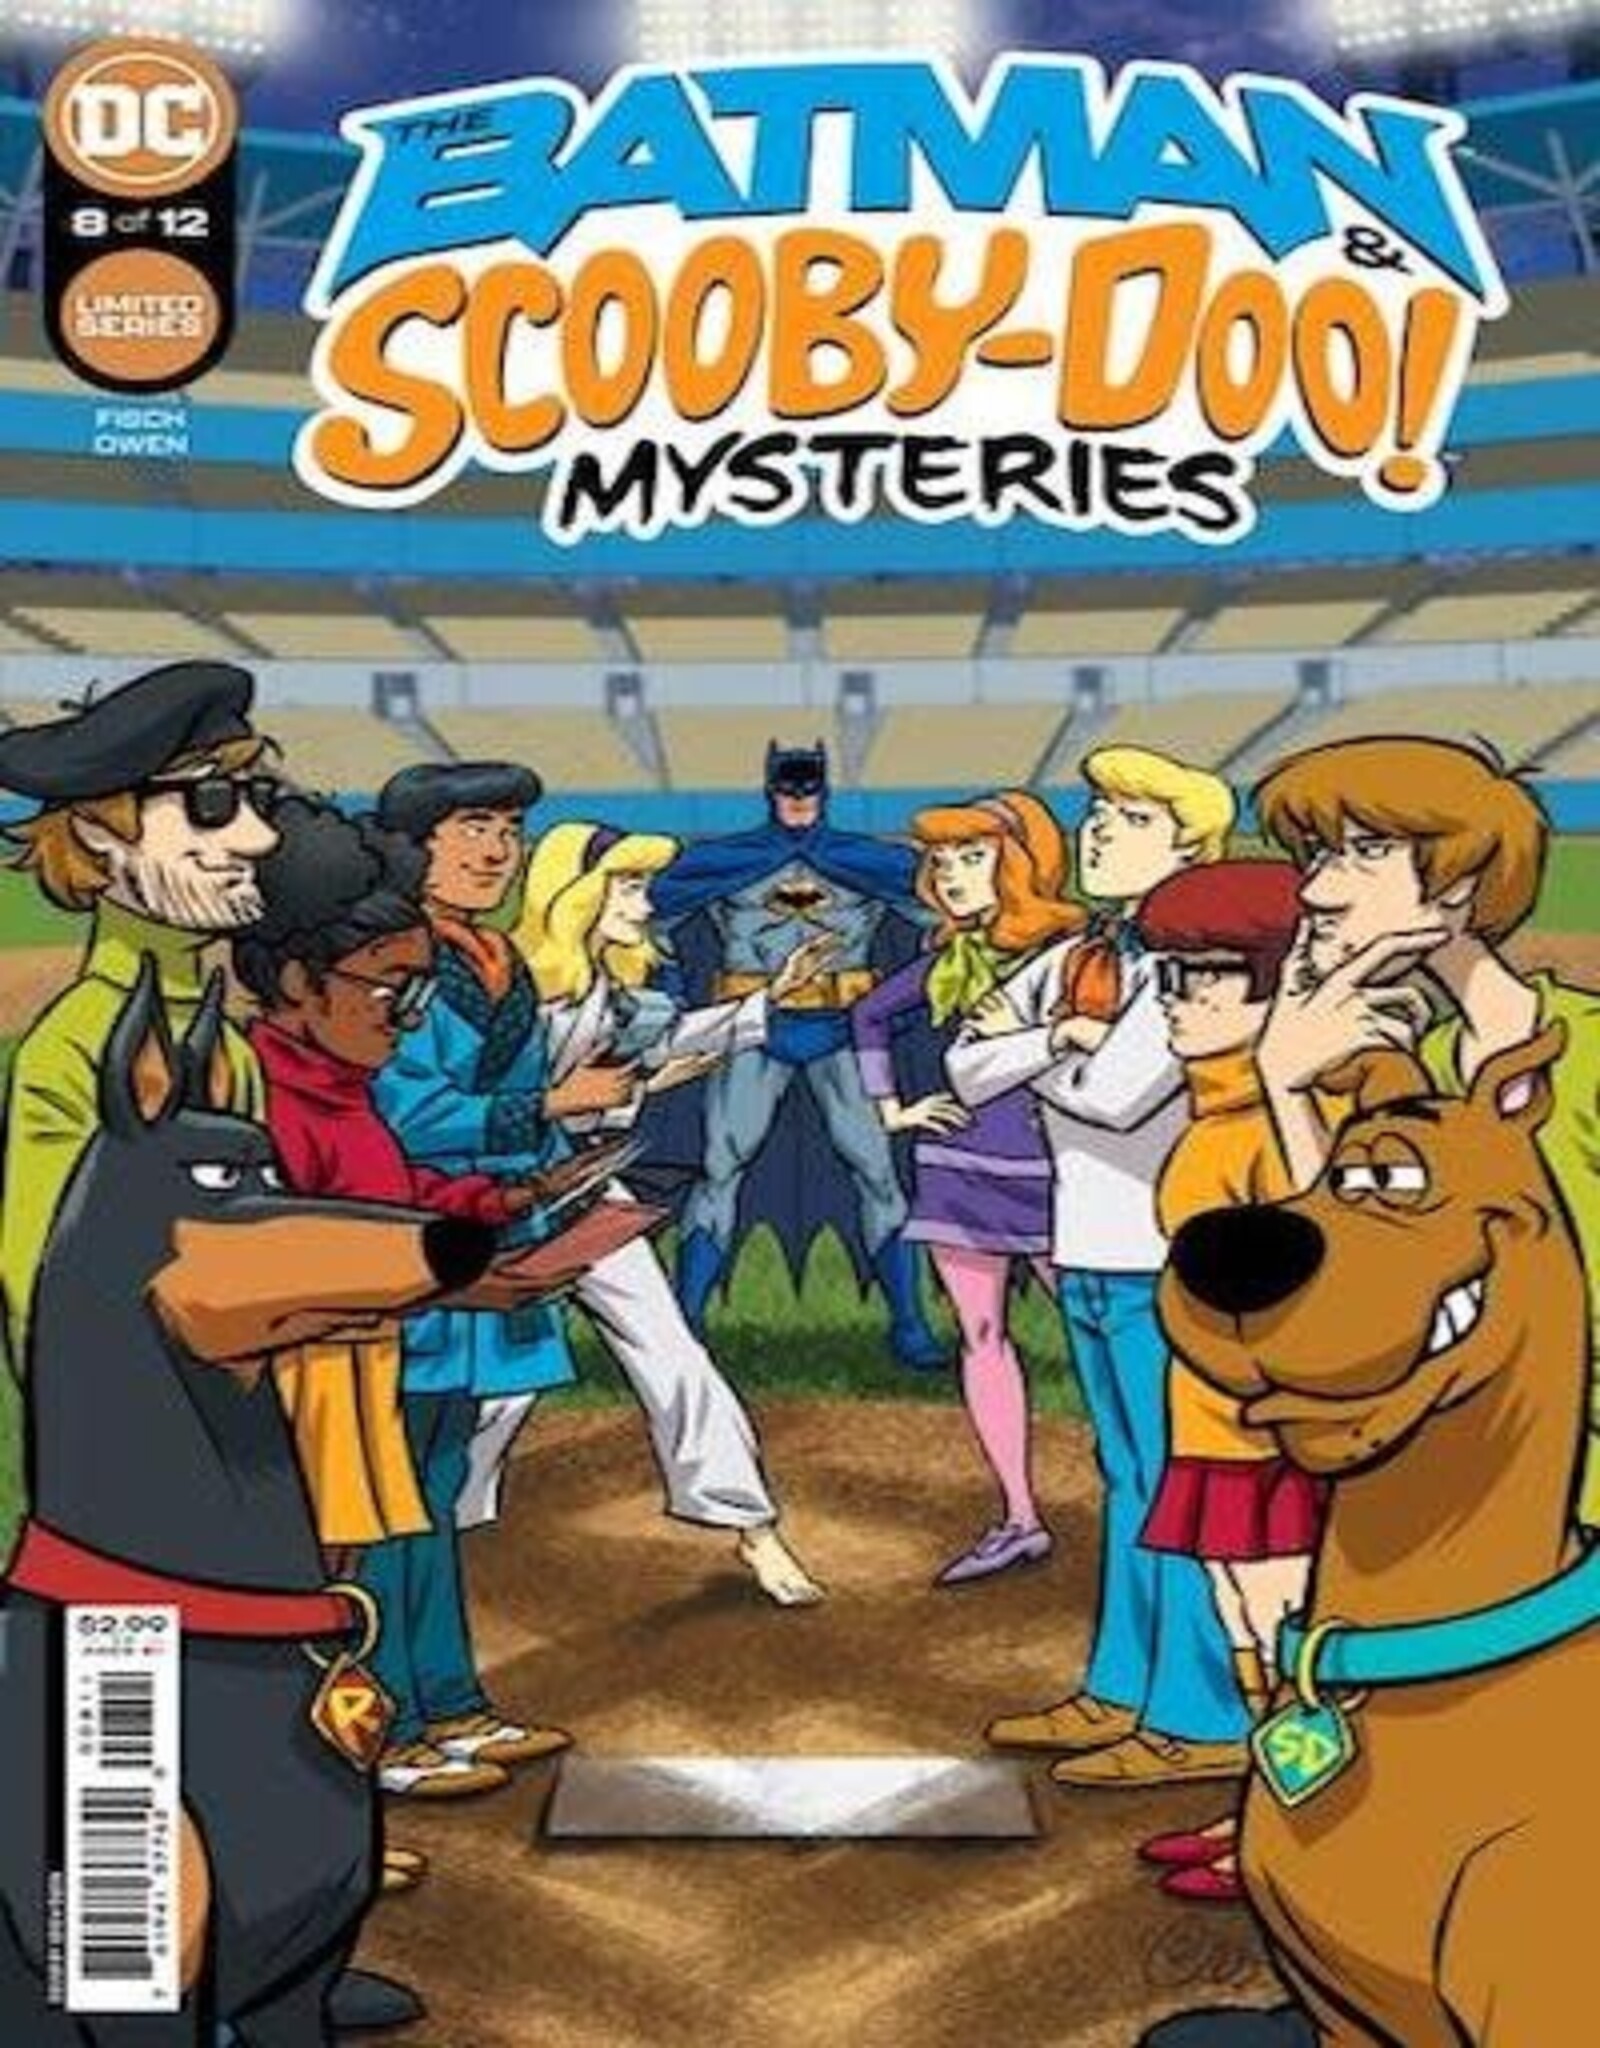 DC Comics Batman & Scooby-Doo Mysteries #8